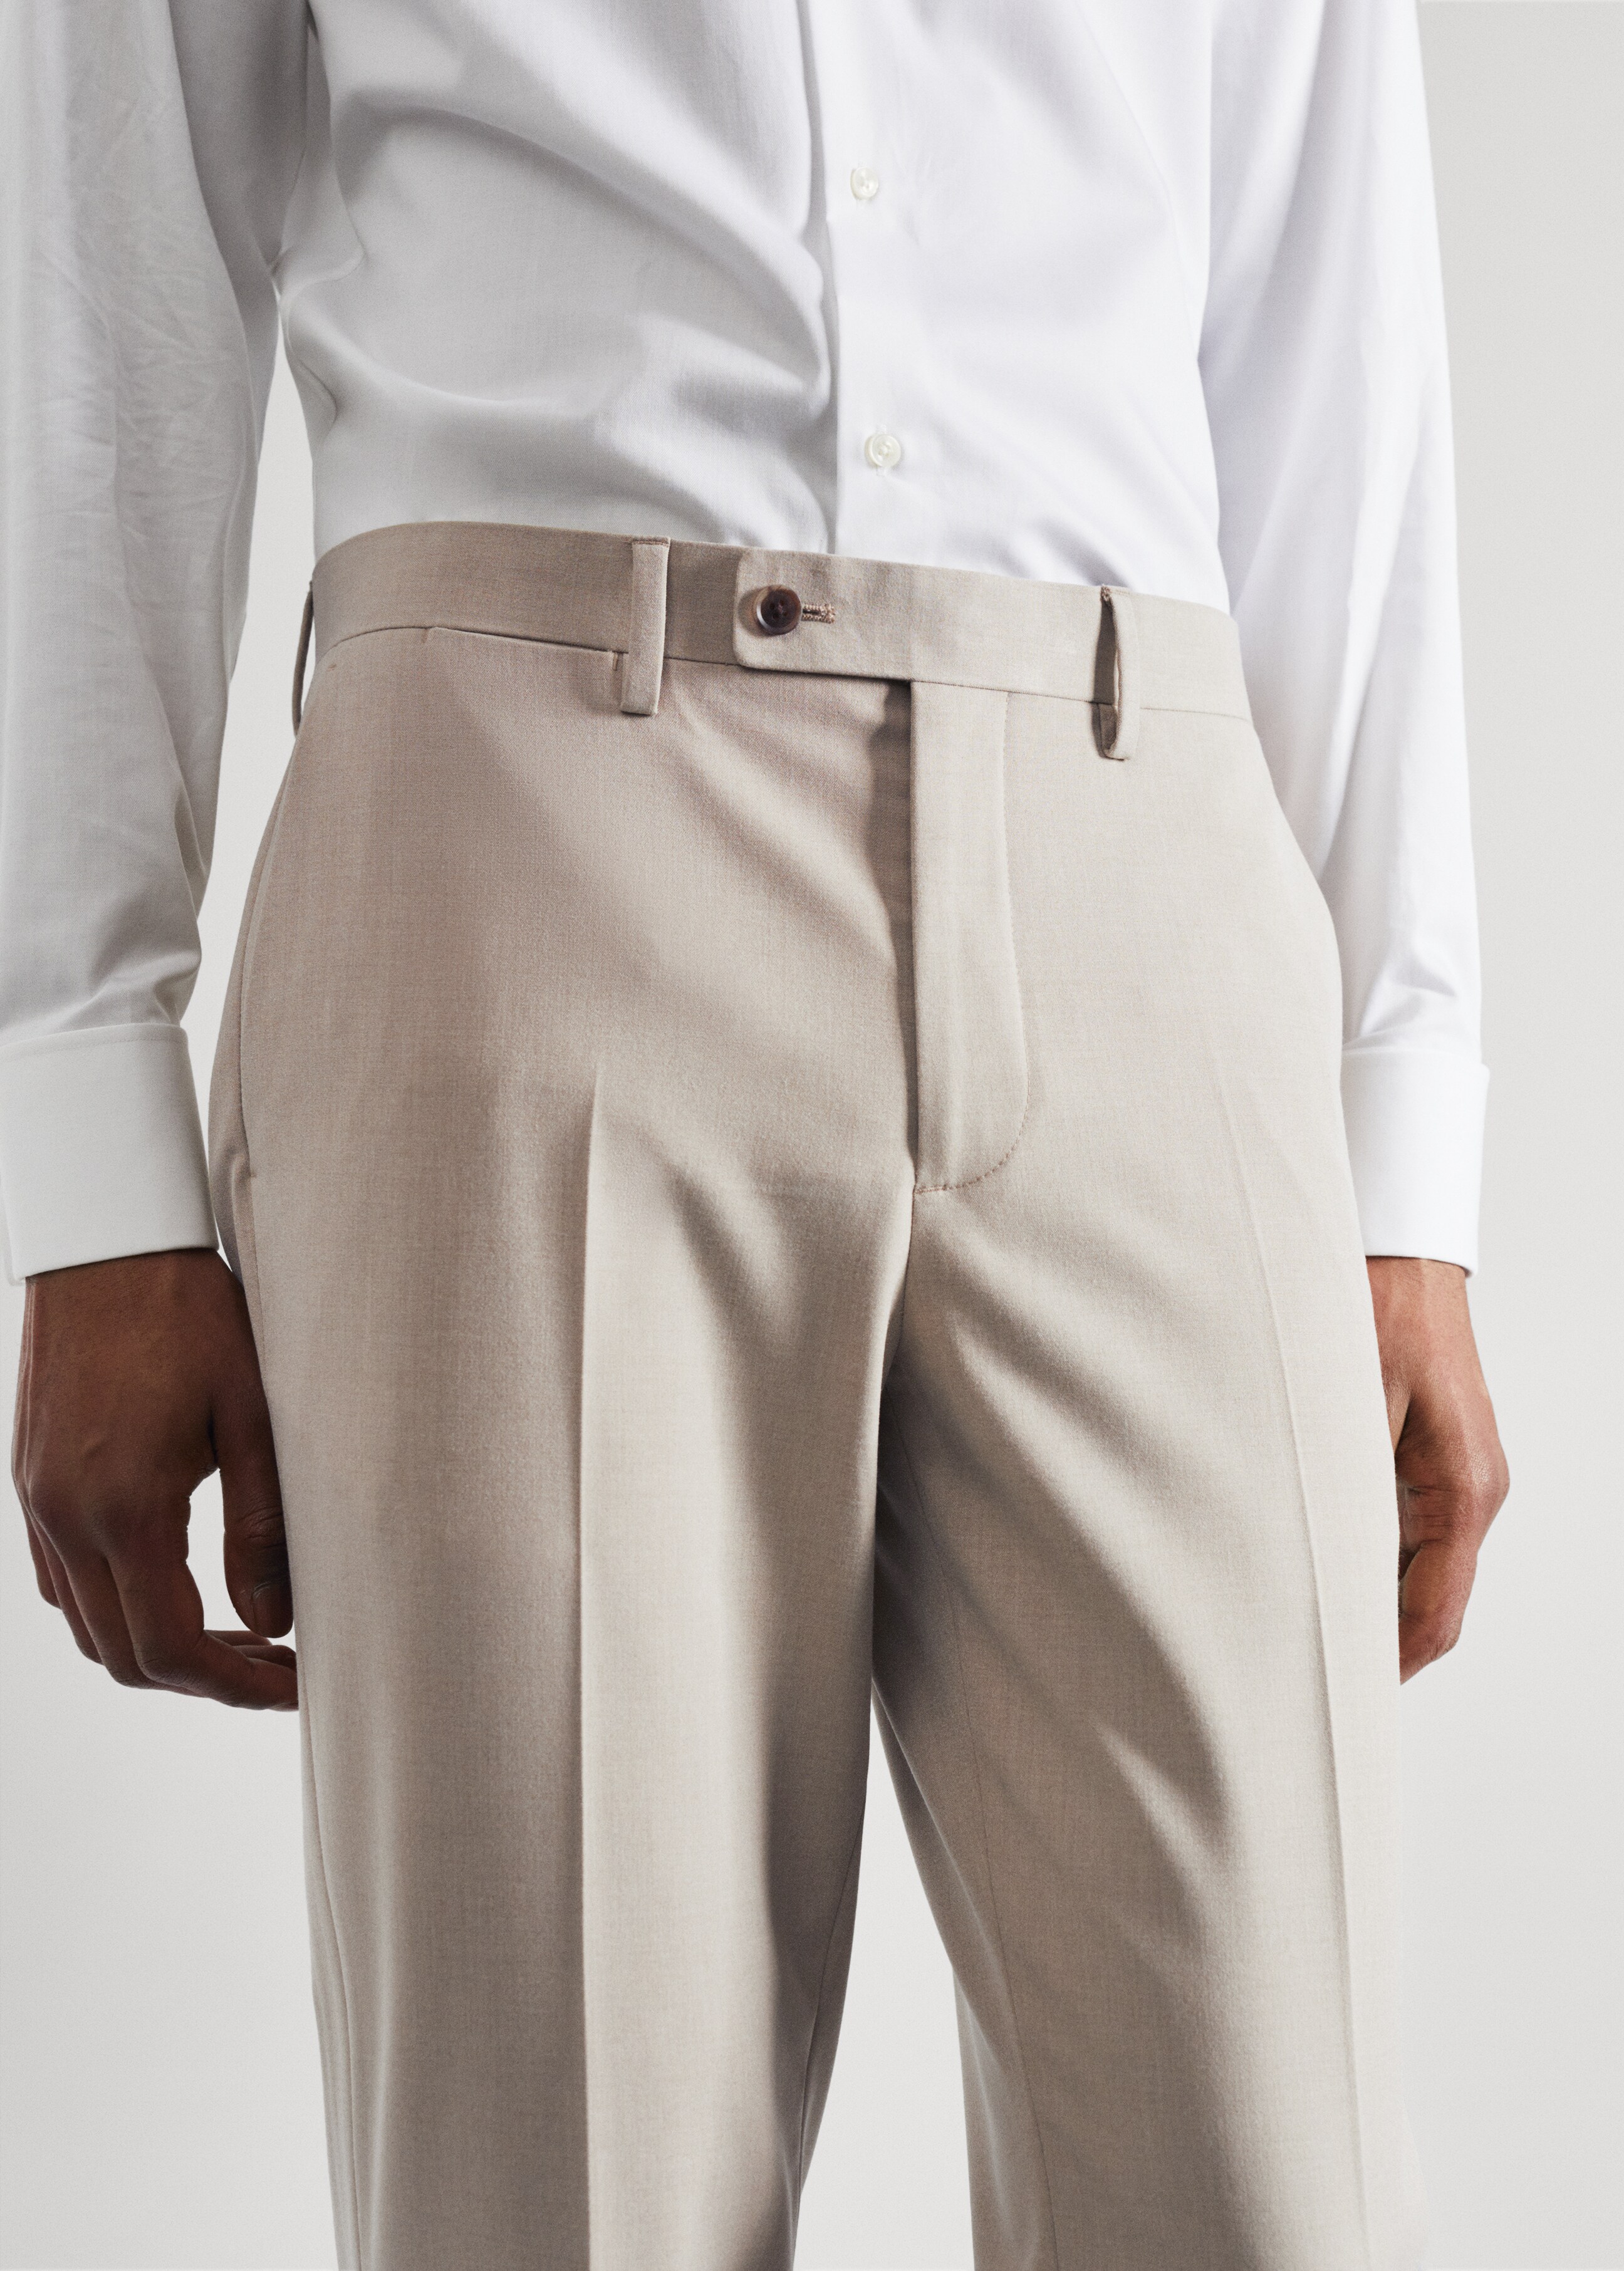 Pantalón traje slim fit tejido strech - Detalle del artículo 1